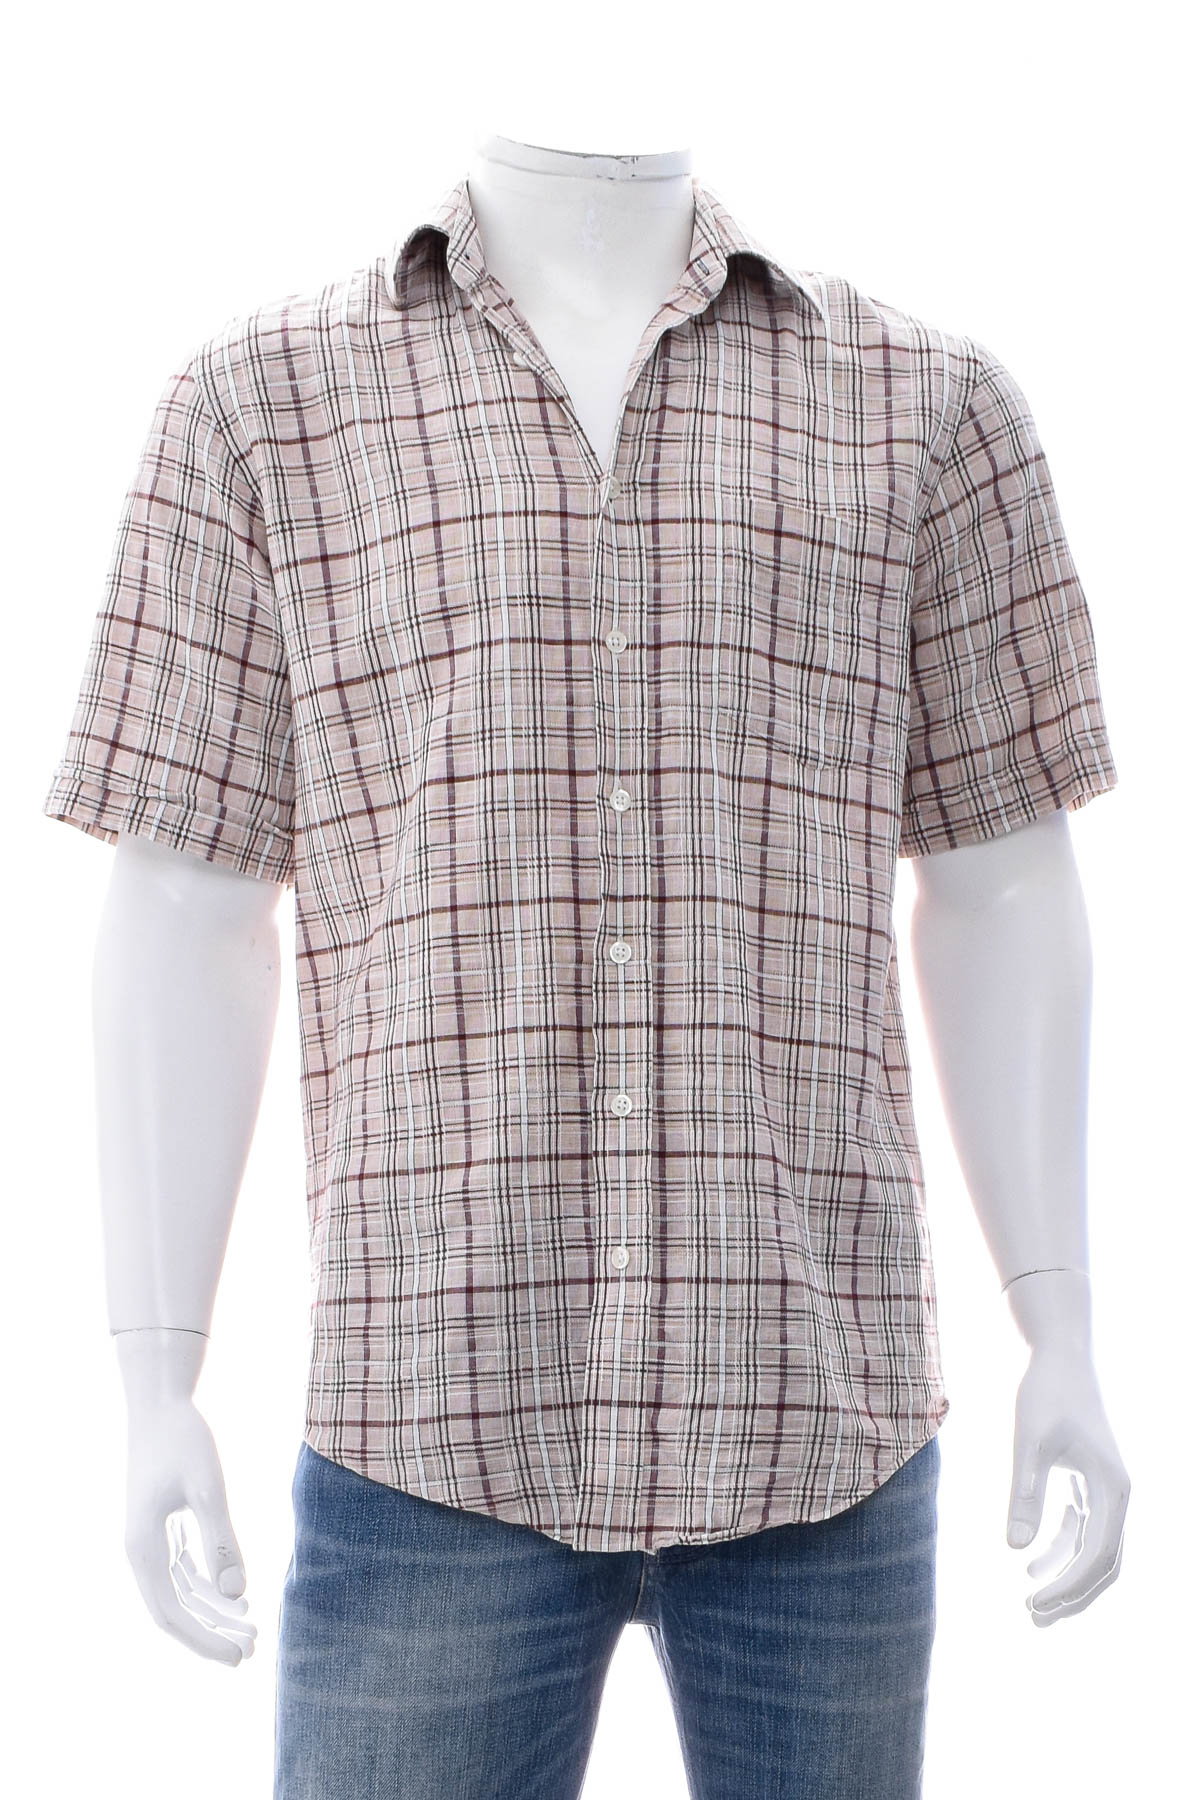 Ανδρικό πουκάμισο - A.W. Dunmore - 0